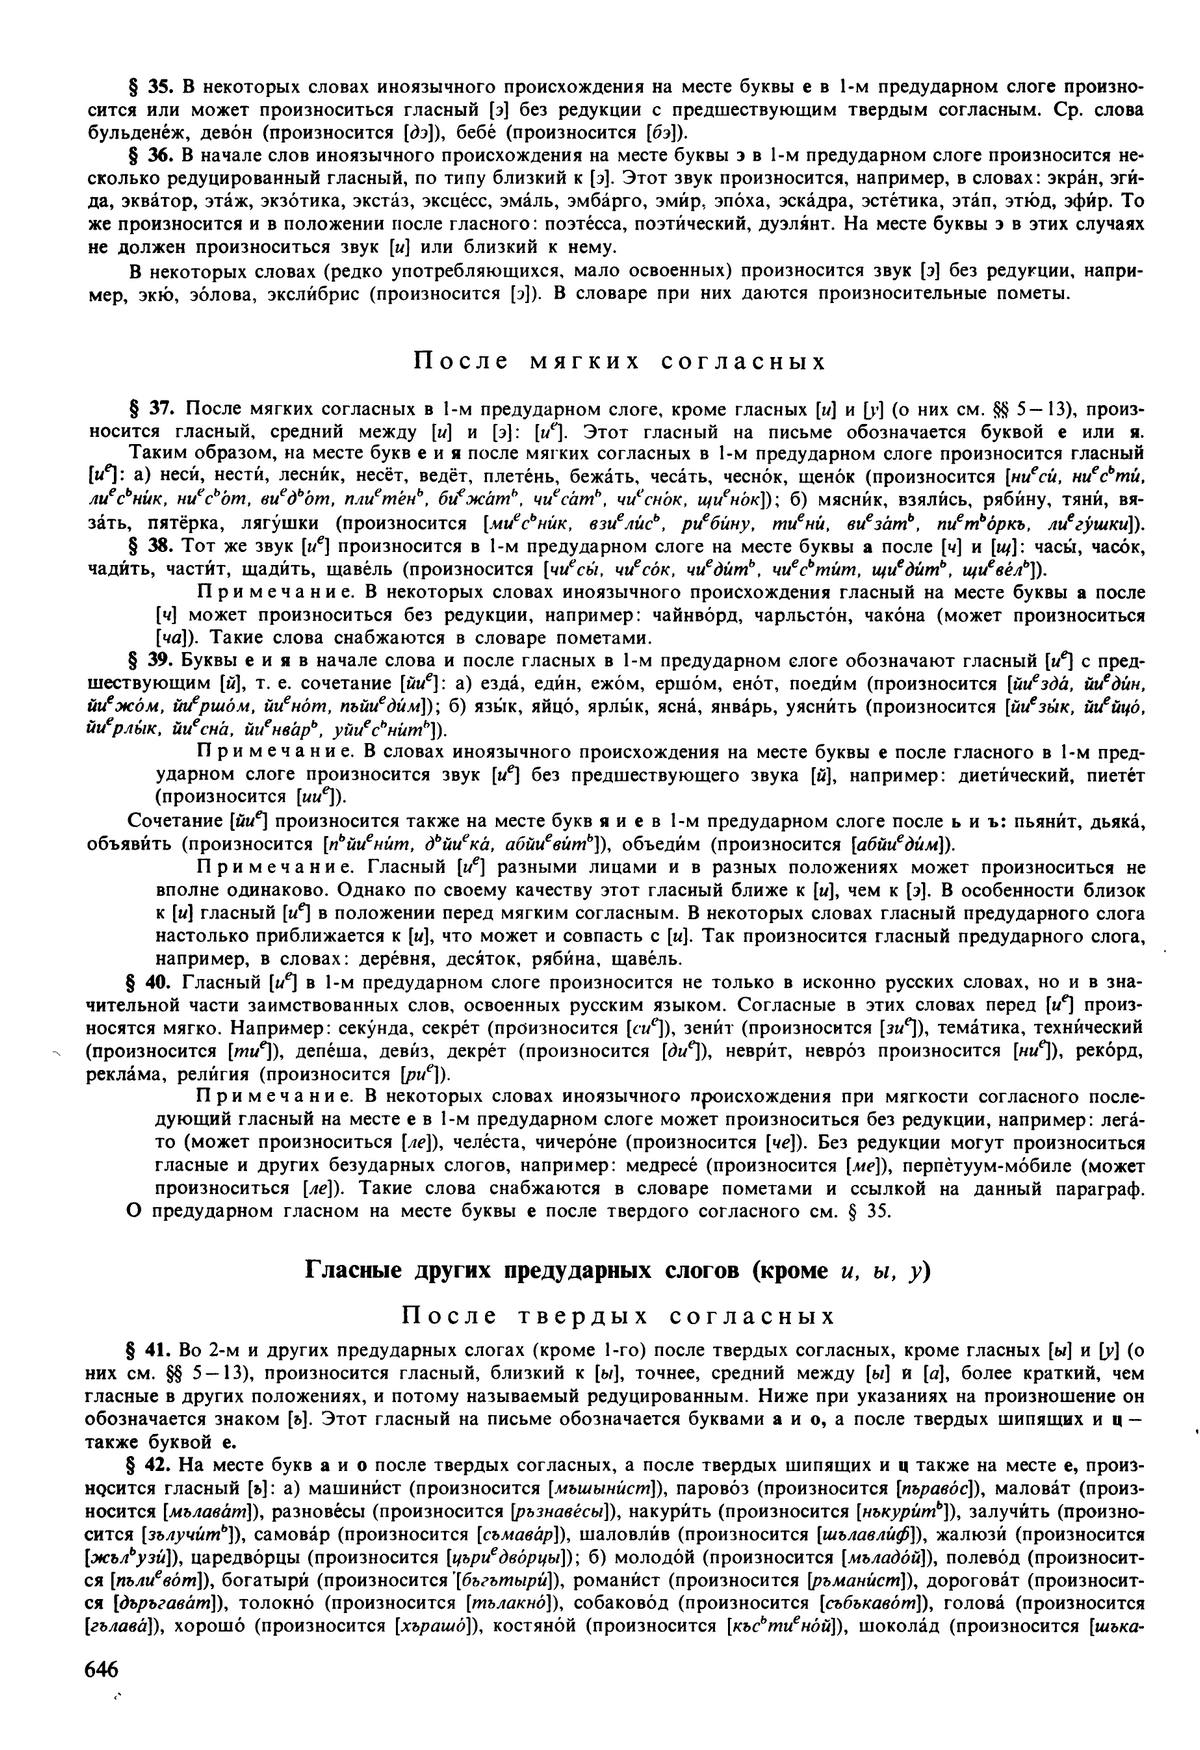 Фотокопия pdf / скан страницы 646 орфоэпического словаря под редакцией Аванесова (5 издание, 1989 год)